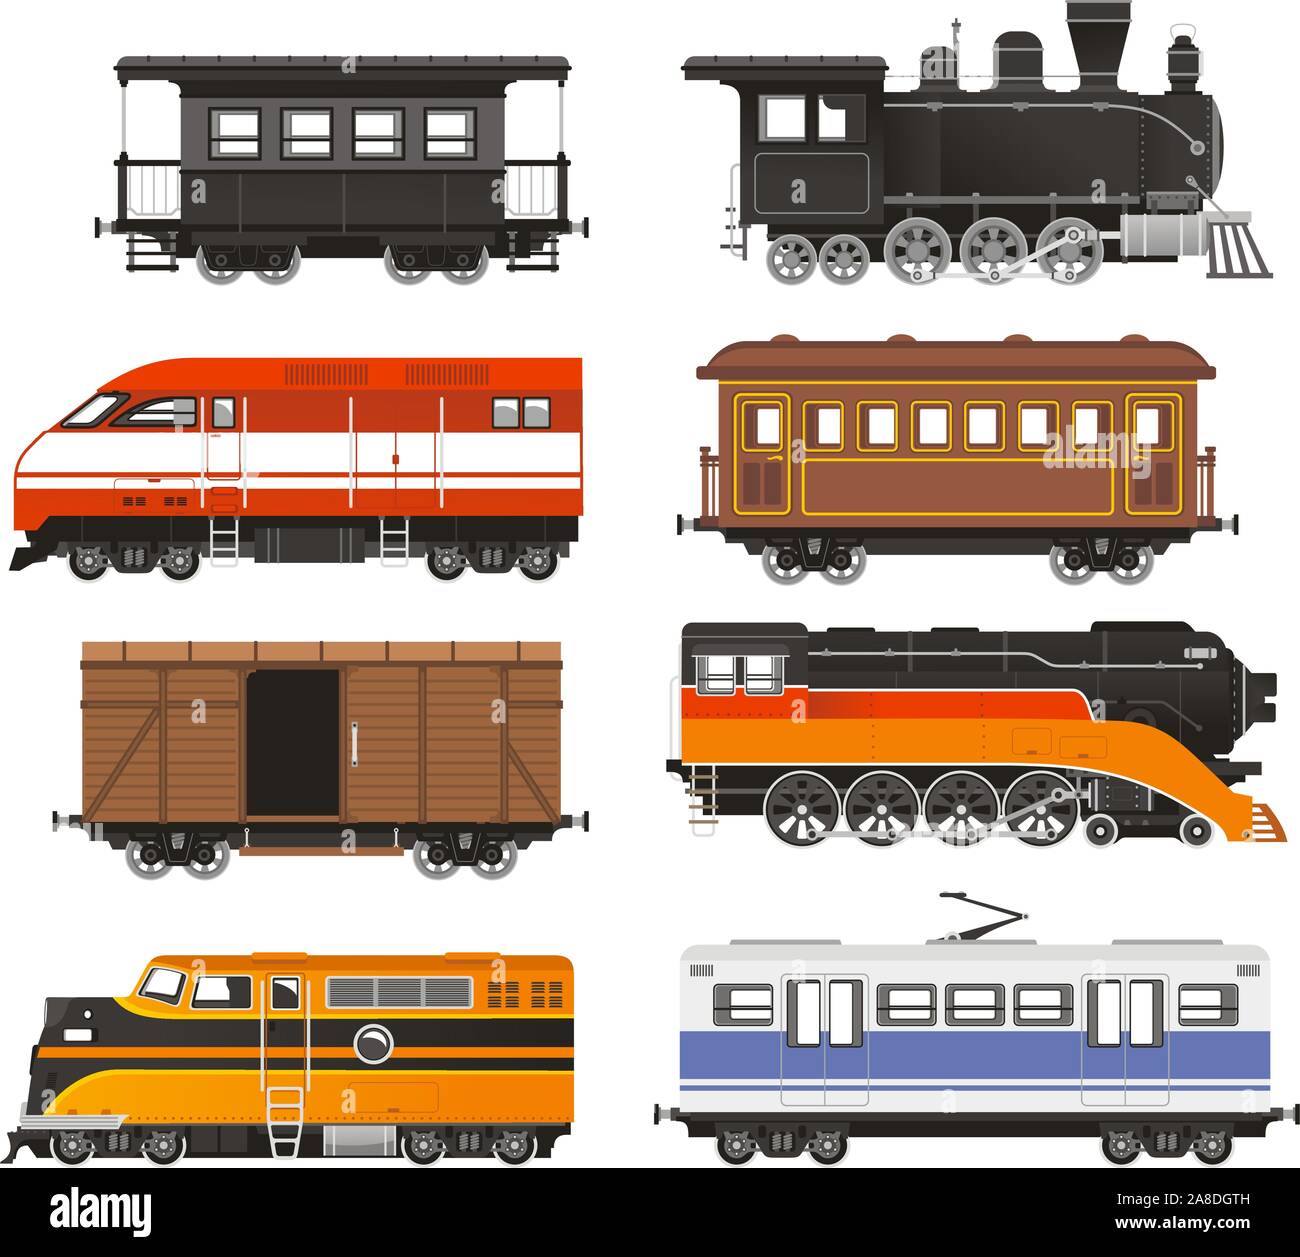 Lokomotive Transport Bahntransport-Vektor-Illustration zu trainieren. Stock Vektor